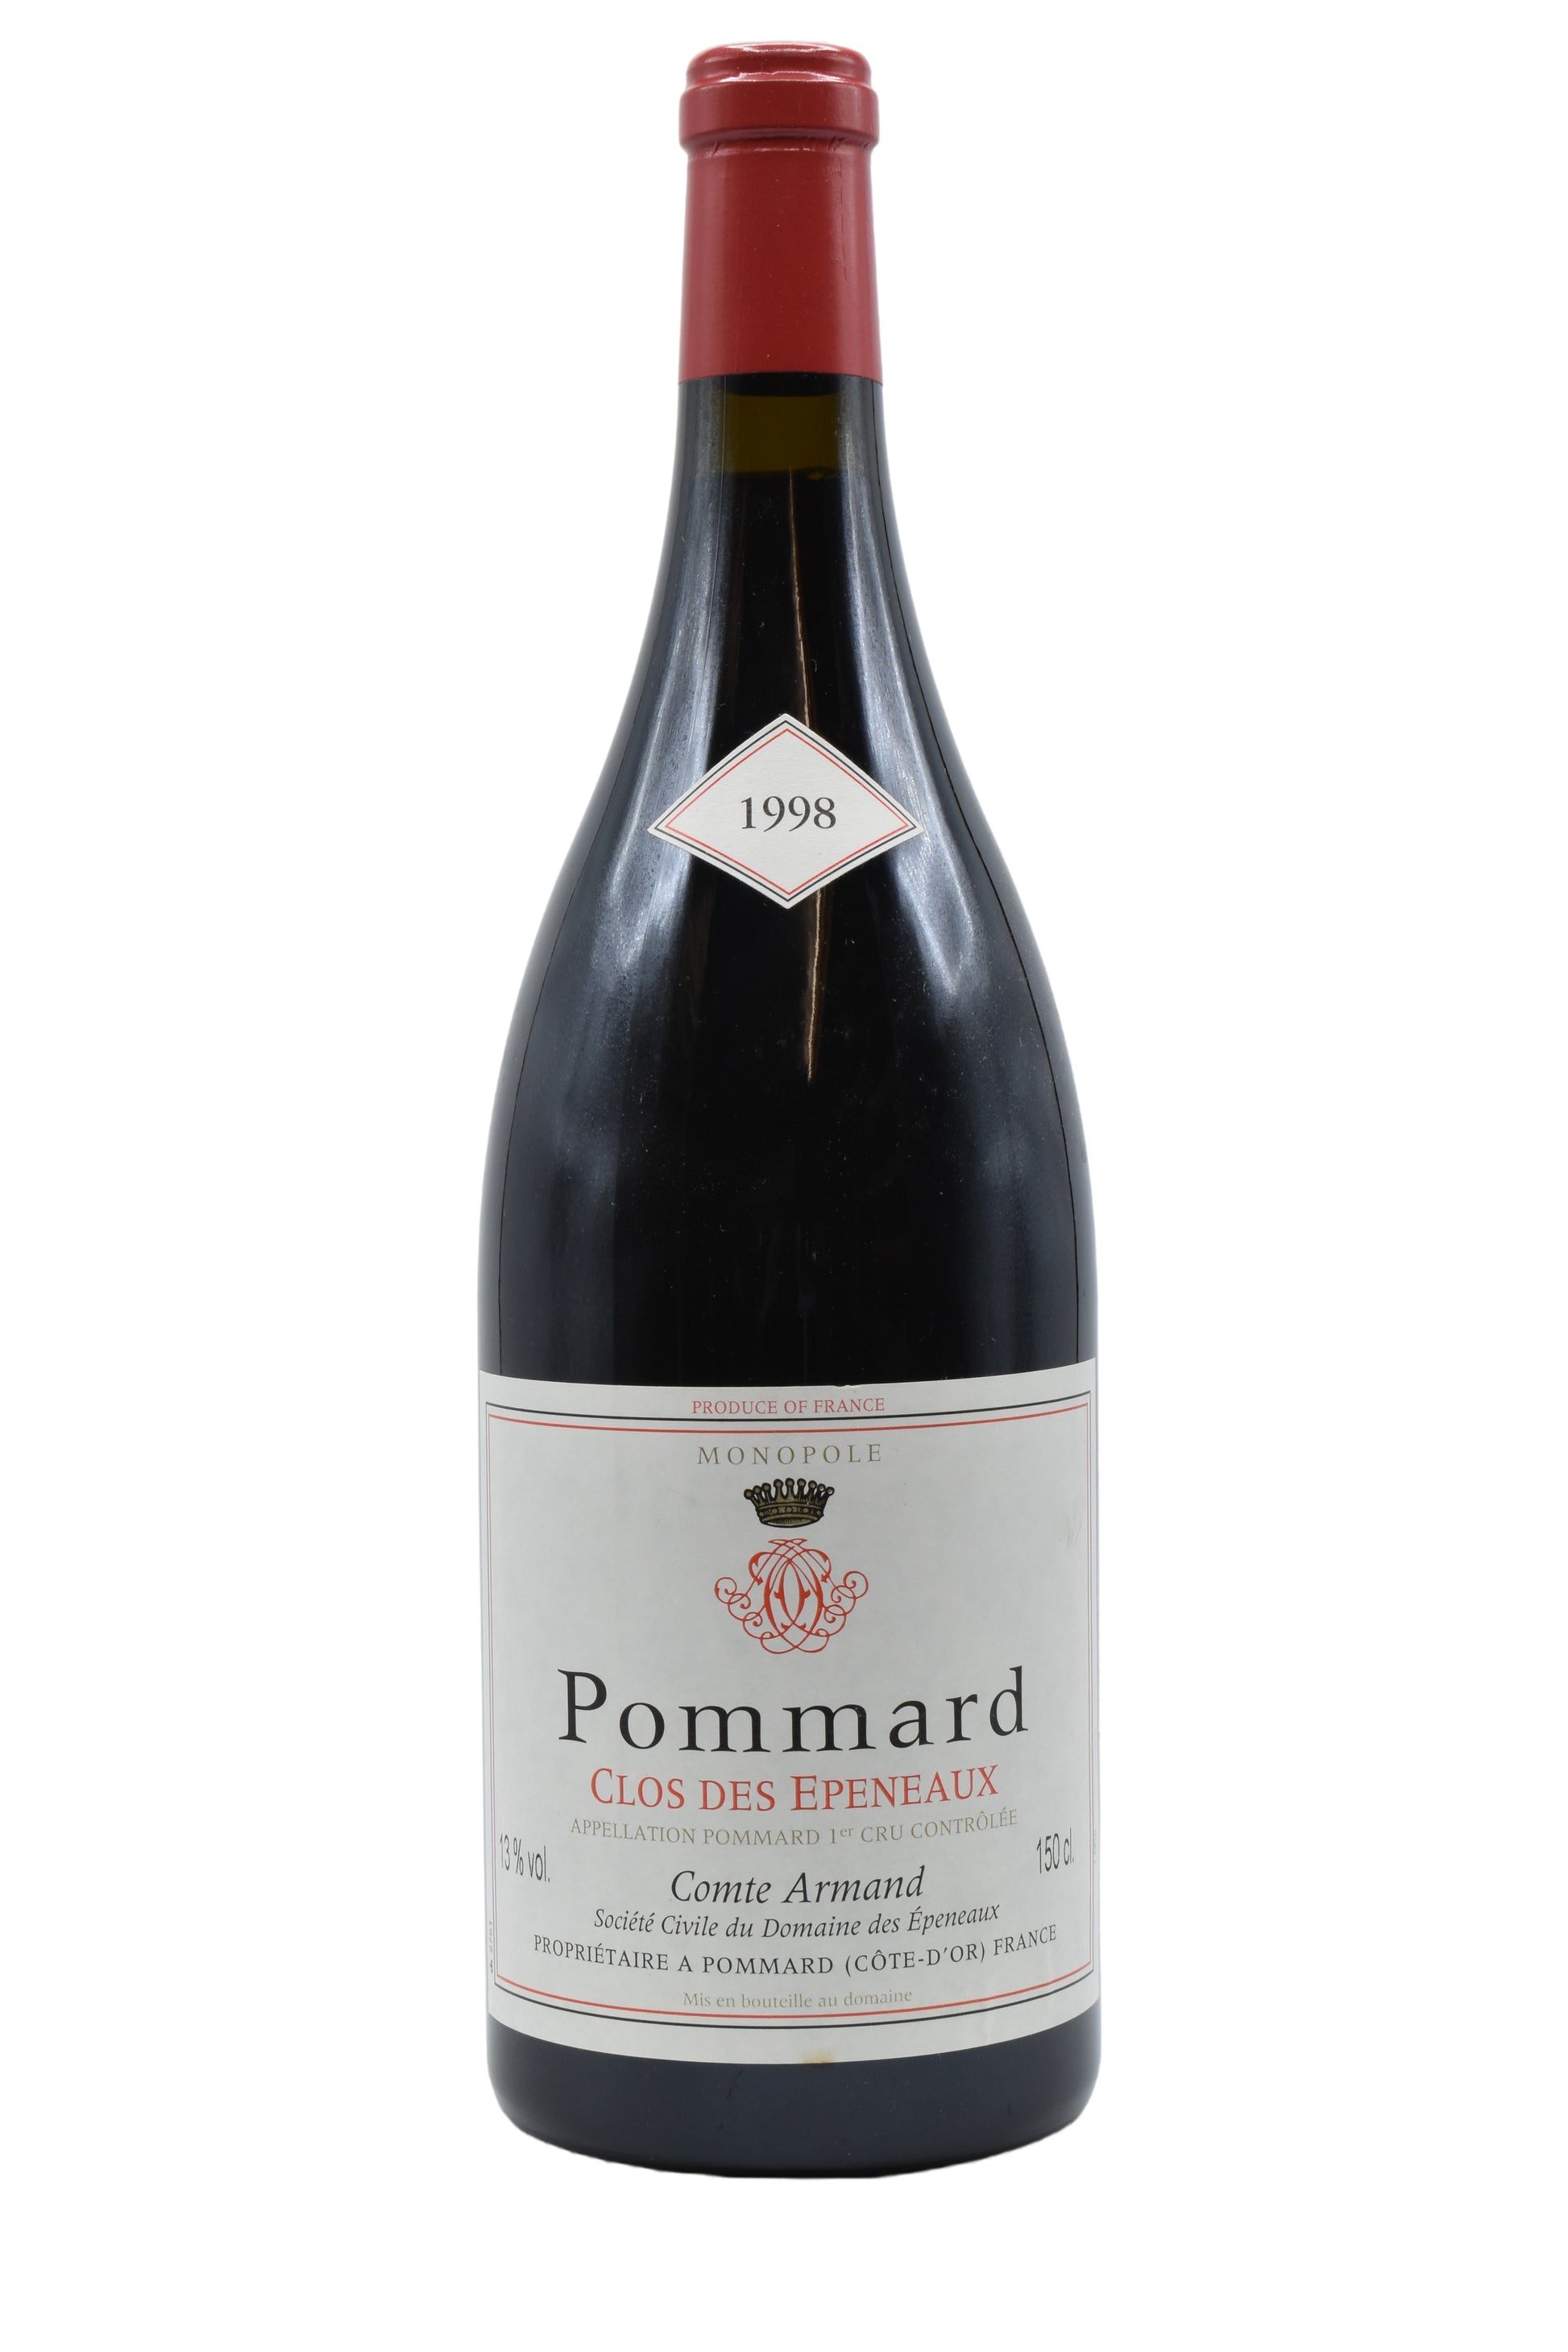 1998 Comte Armand Pommard Clos des Epeneaux 1.5L - Walker Wine Co.